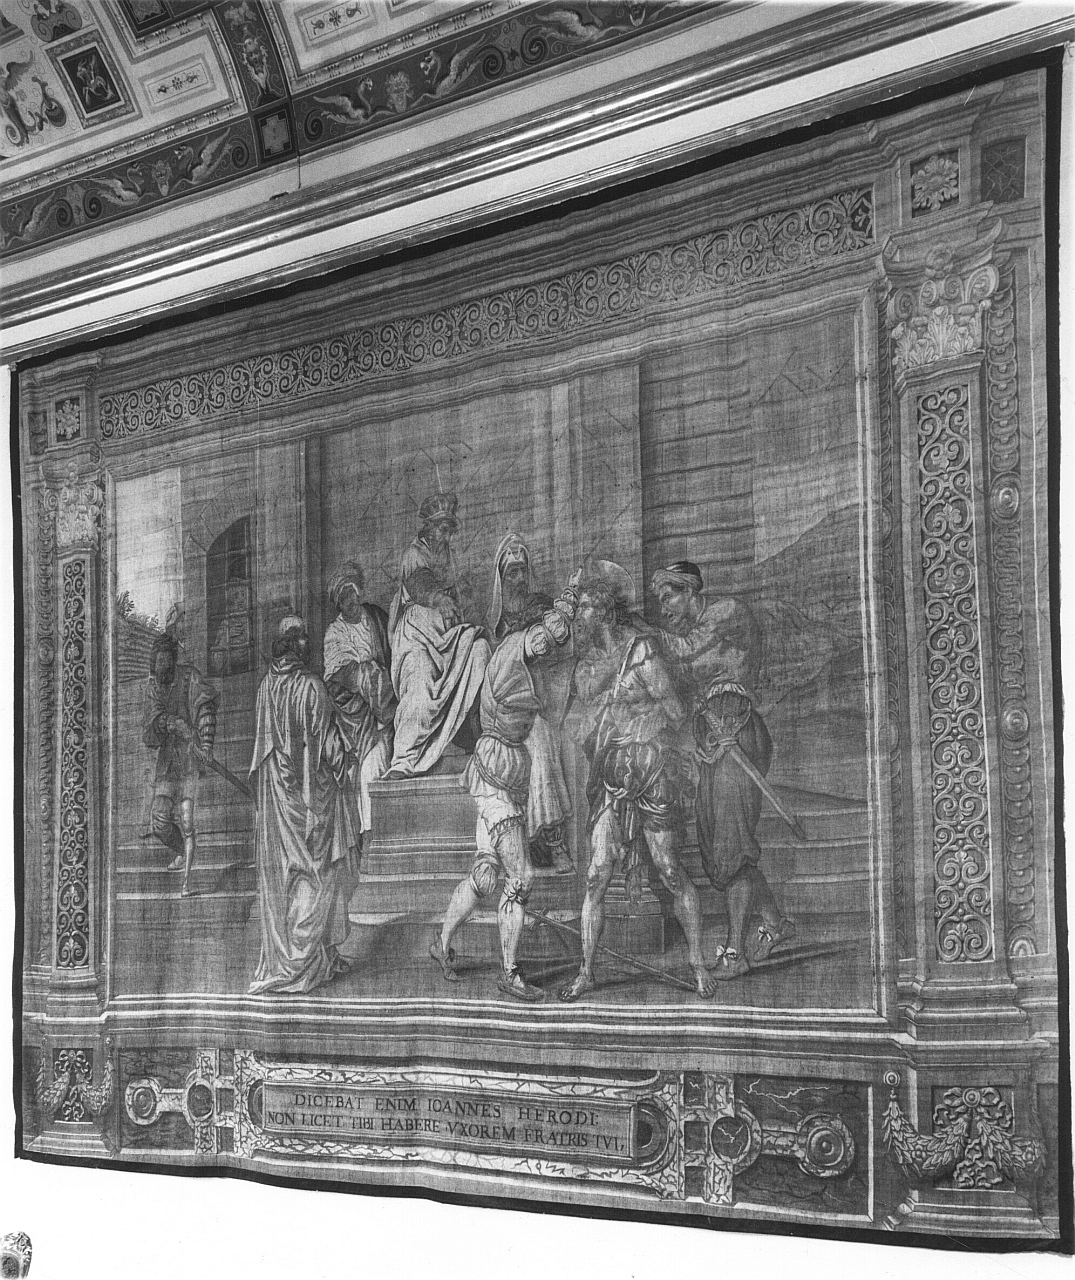 arresto di San Giovanni Battista (arazzo) di Melissi Agostino, Hasselt Bernardino van, Pollastri Giovanni (sec. XVII)